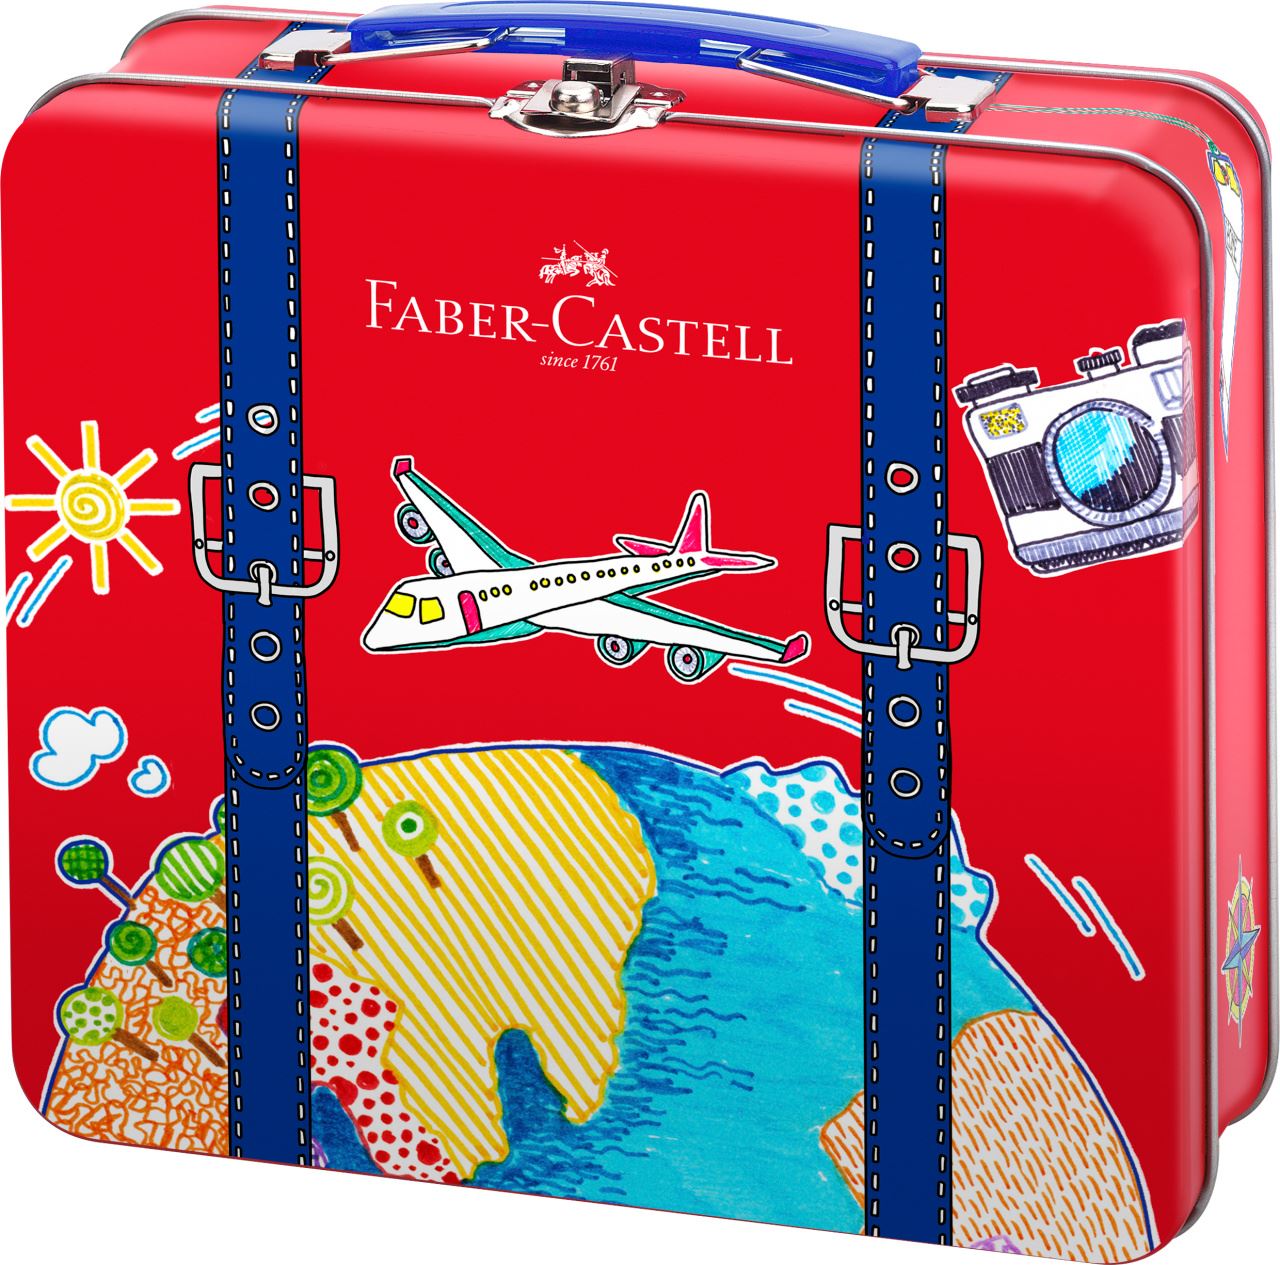 Faber-Castell - Connector felt tip pen suitcase